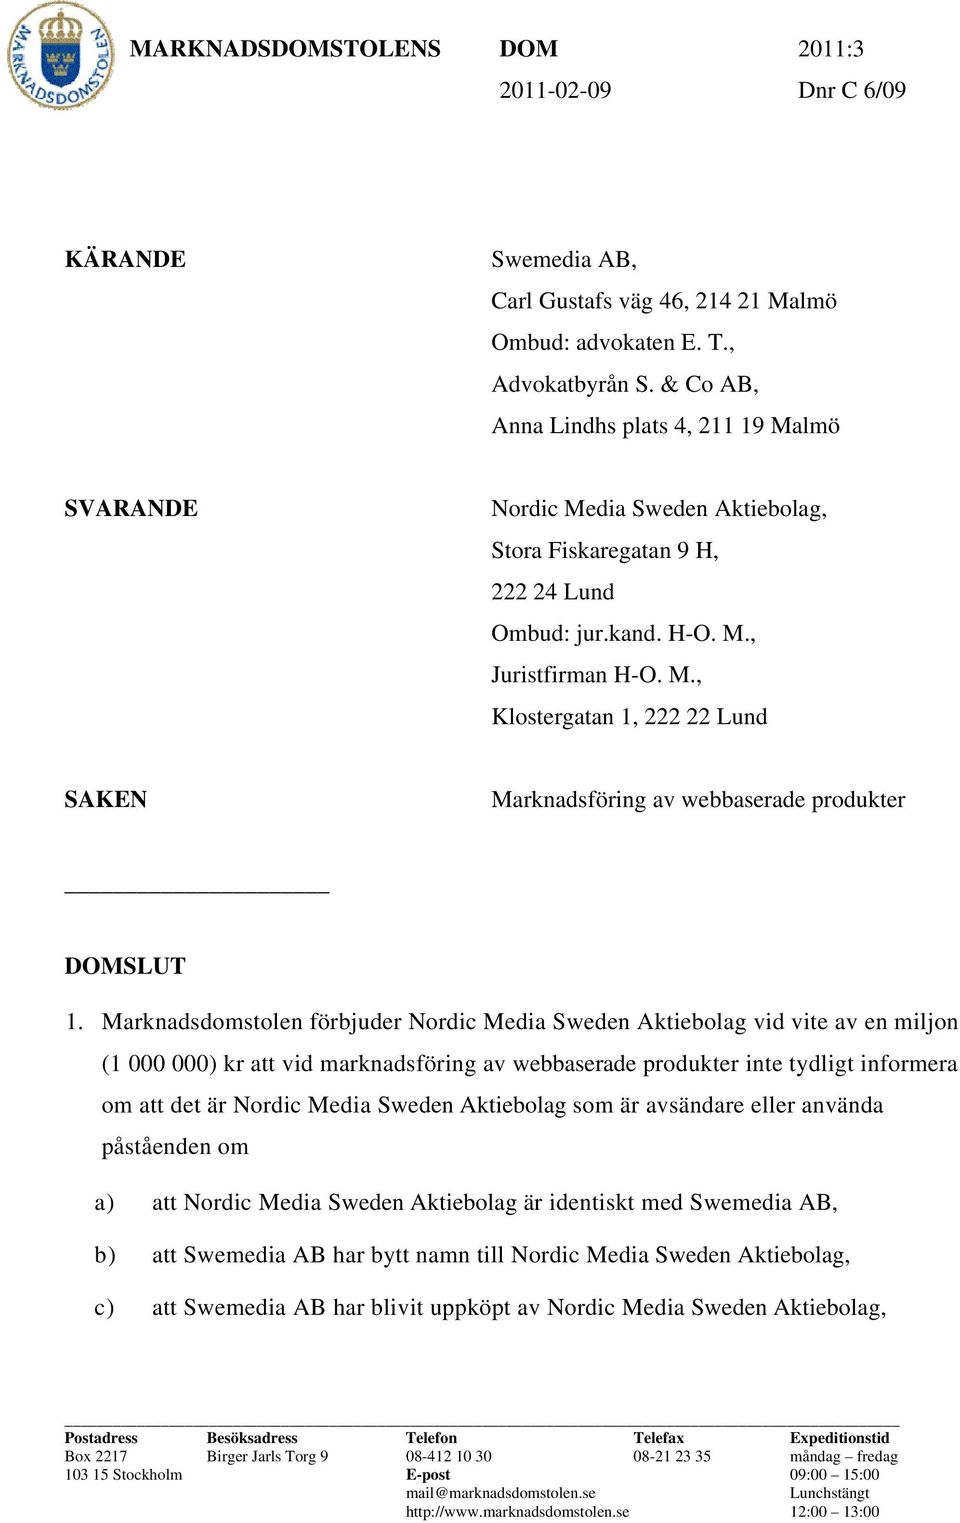 Marknadsdomstolen förbjuder Nordic Media Sweden Aktiebolag vid vite av en miljon (1 000 000) kr att vid marknadsföring av webbaserade produkter inte tydligt informera om att det är Nordic Media